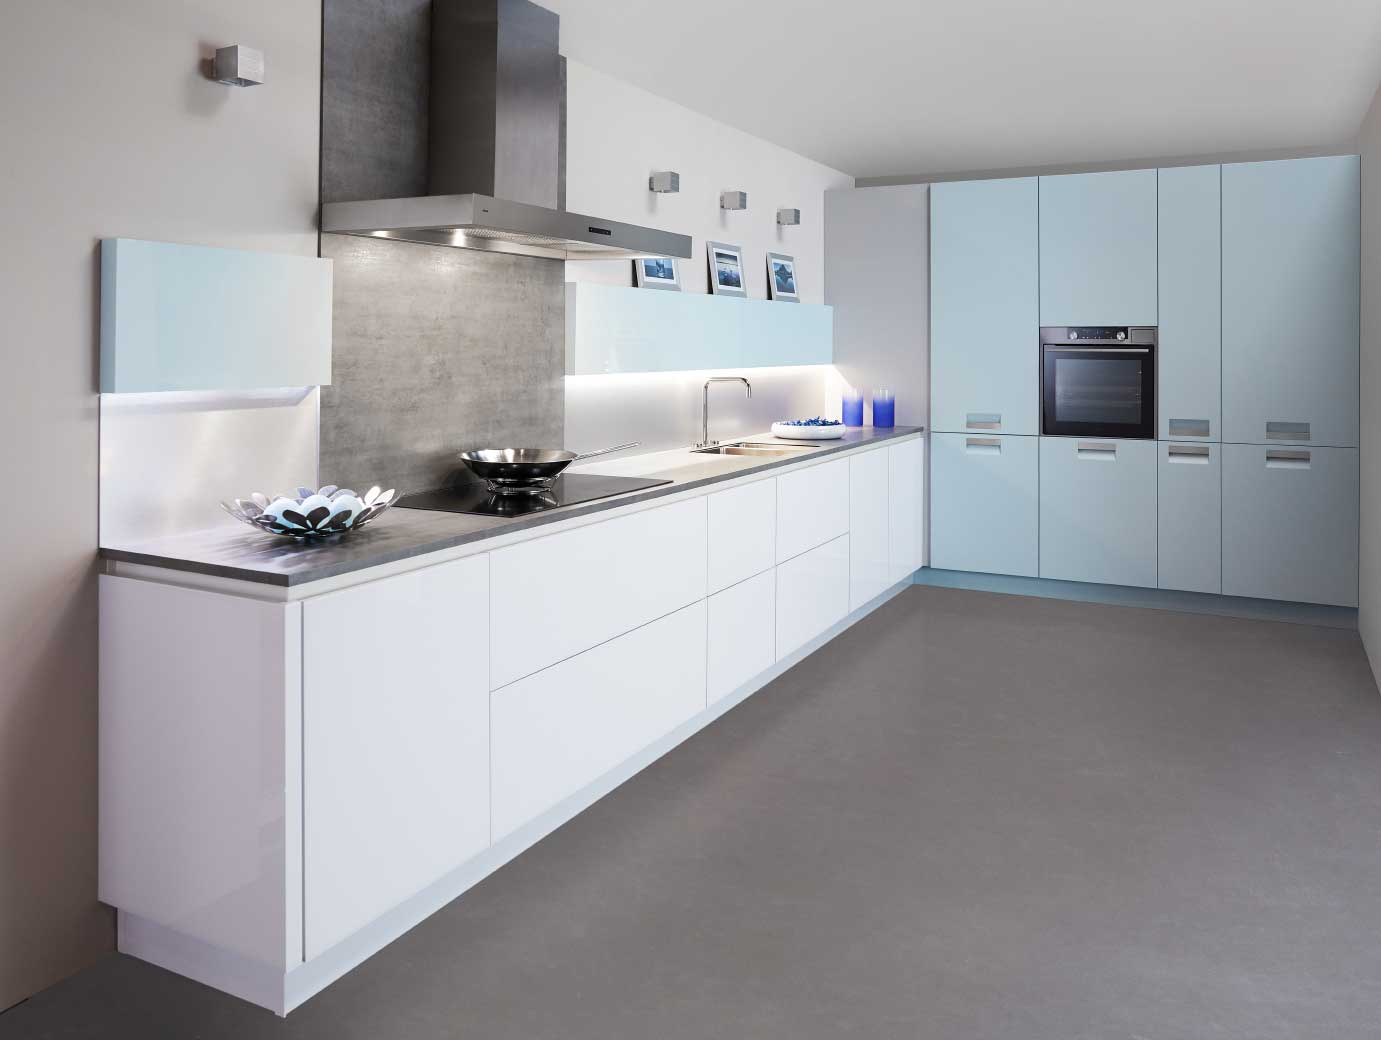 Blauwtinten zijn de keukentrend voor het nieuwe woonseizoen. Met een witte basis en trendy materialen als glas en chroom. Keuken: Edena van Keller Keukens #keukentrend #woontrend #blauw #keuken #keller #keukeninspiratie